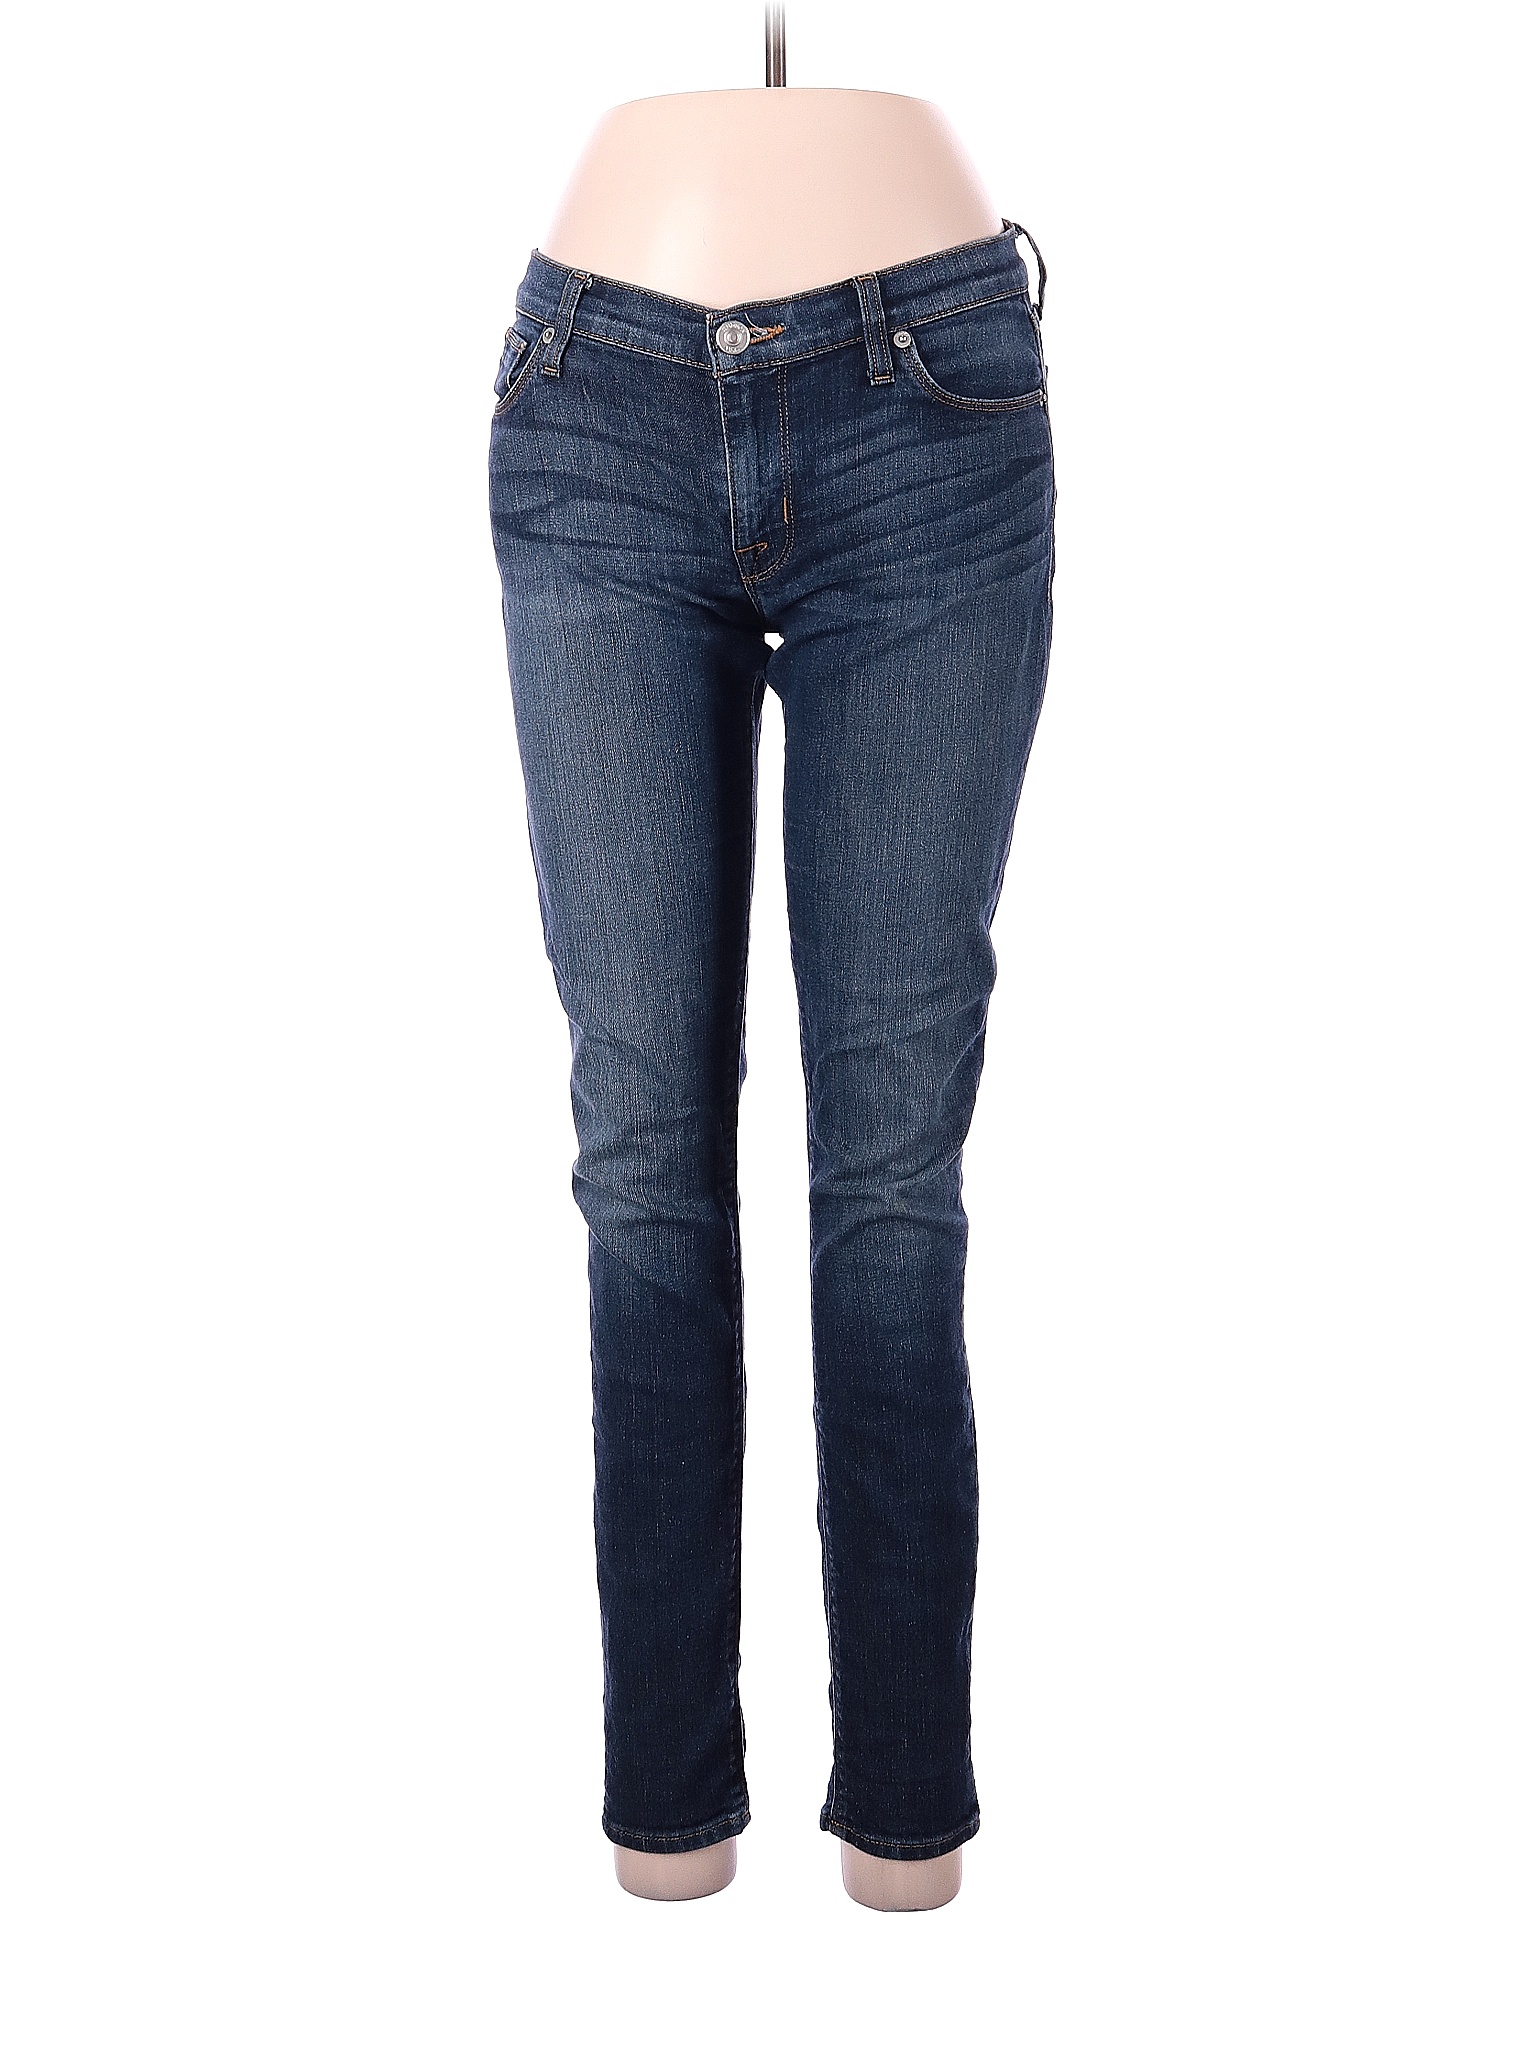 Hudson Jeans Solid Blue Jeans 28 Waist - 92% off | thredUP